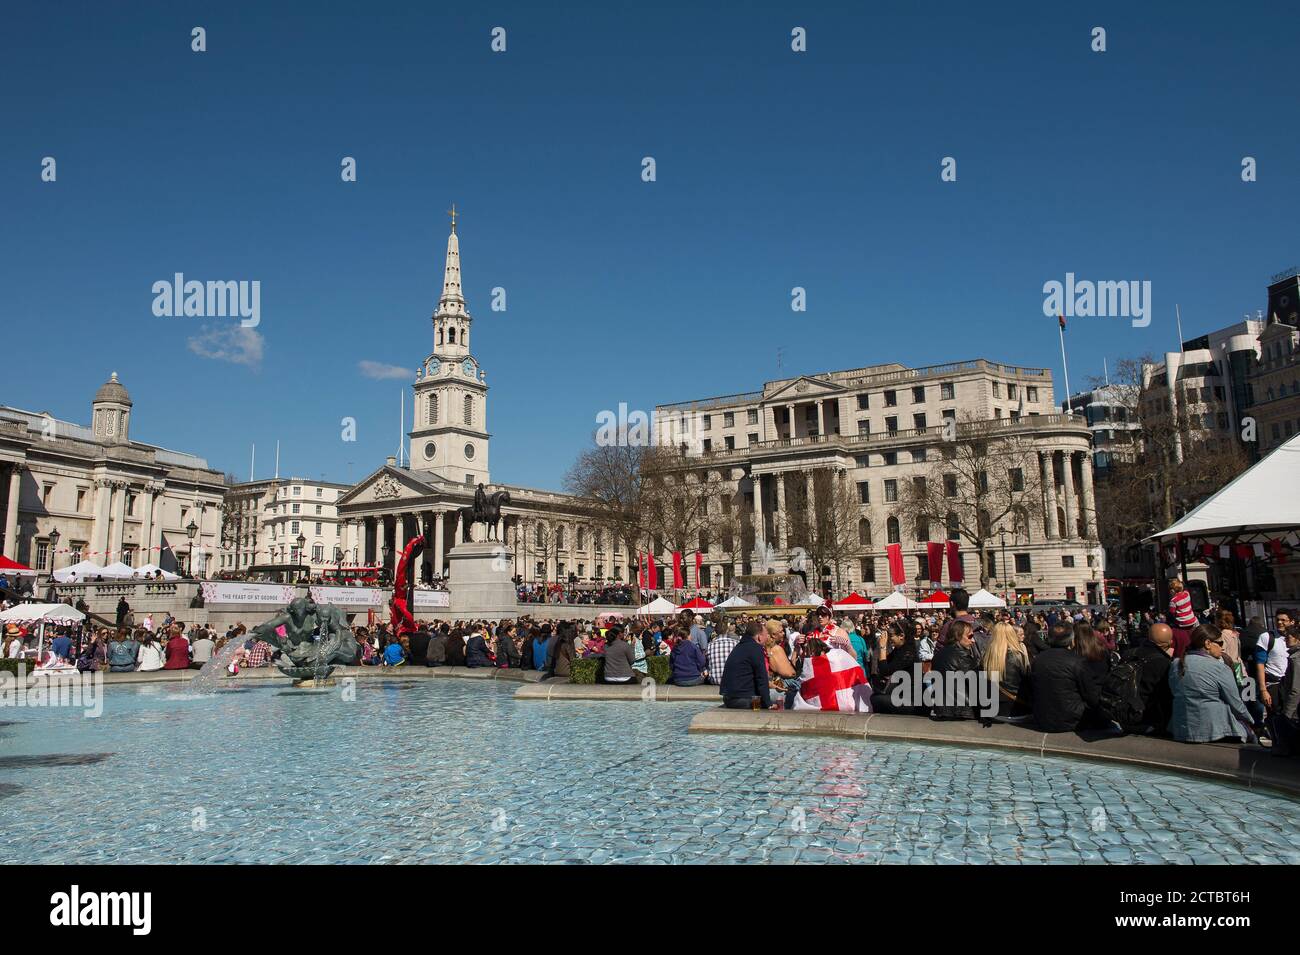 Besucher der jährlichen Feast of St. George-Feierlichkeiten am Trafalgar Square in London, England. Stockfoto